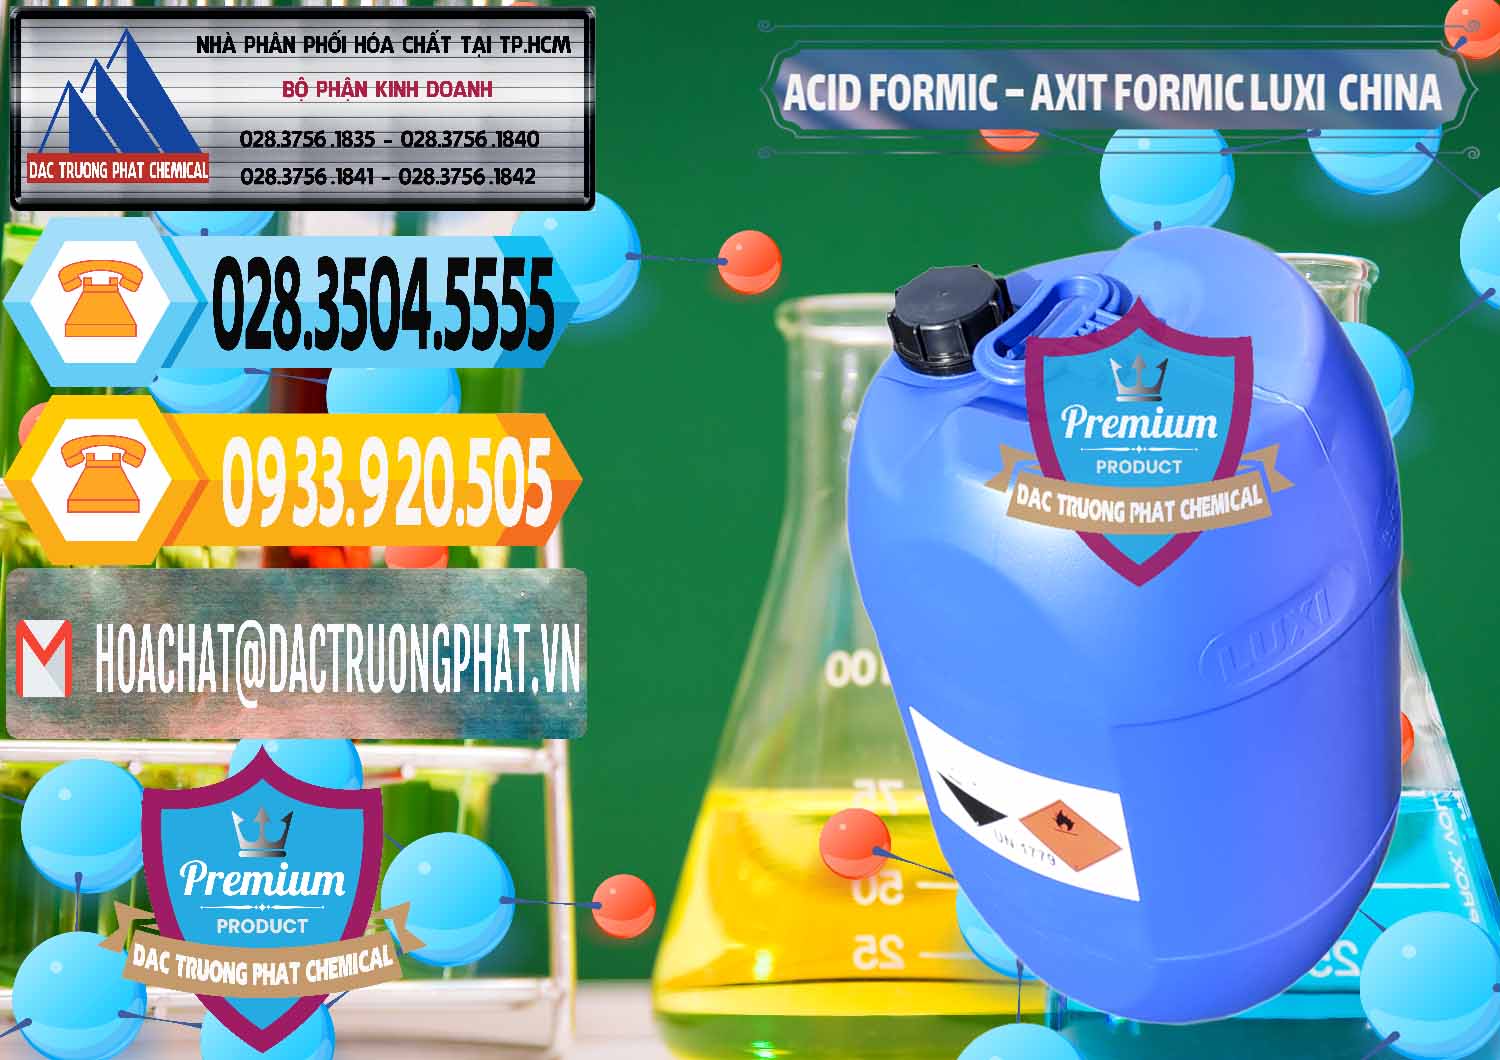 Cty chuyên kinh doanh _ bán Acid Formic - Axit Formic Luxi Trung Quốc China - 0029 - Chuyên phân phối và bán hóa chất tại TP.HCM - hoachattayrua.net